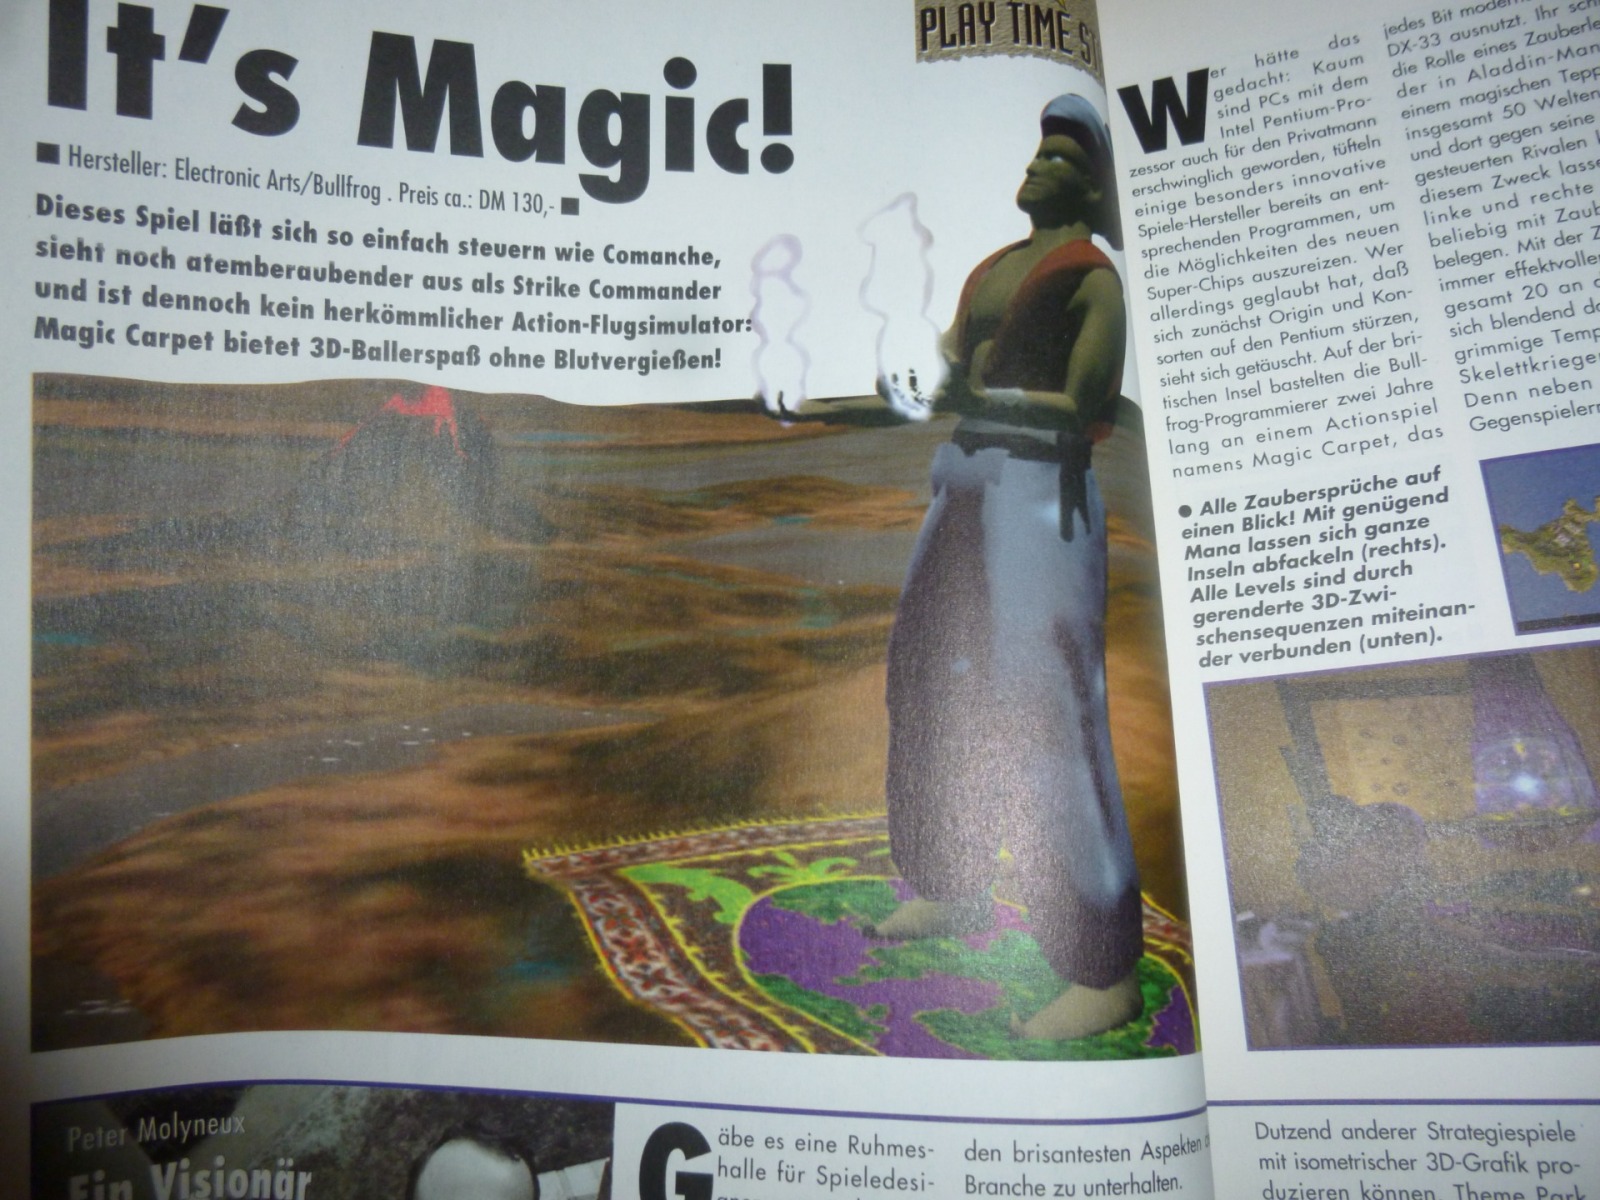 Play Time - Das Computer- und Videospiele-Magazin - Ausgabe 12/94 1994 8